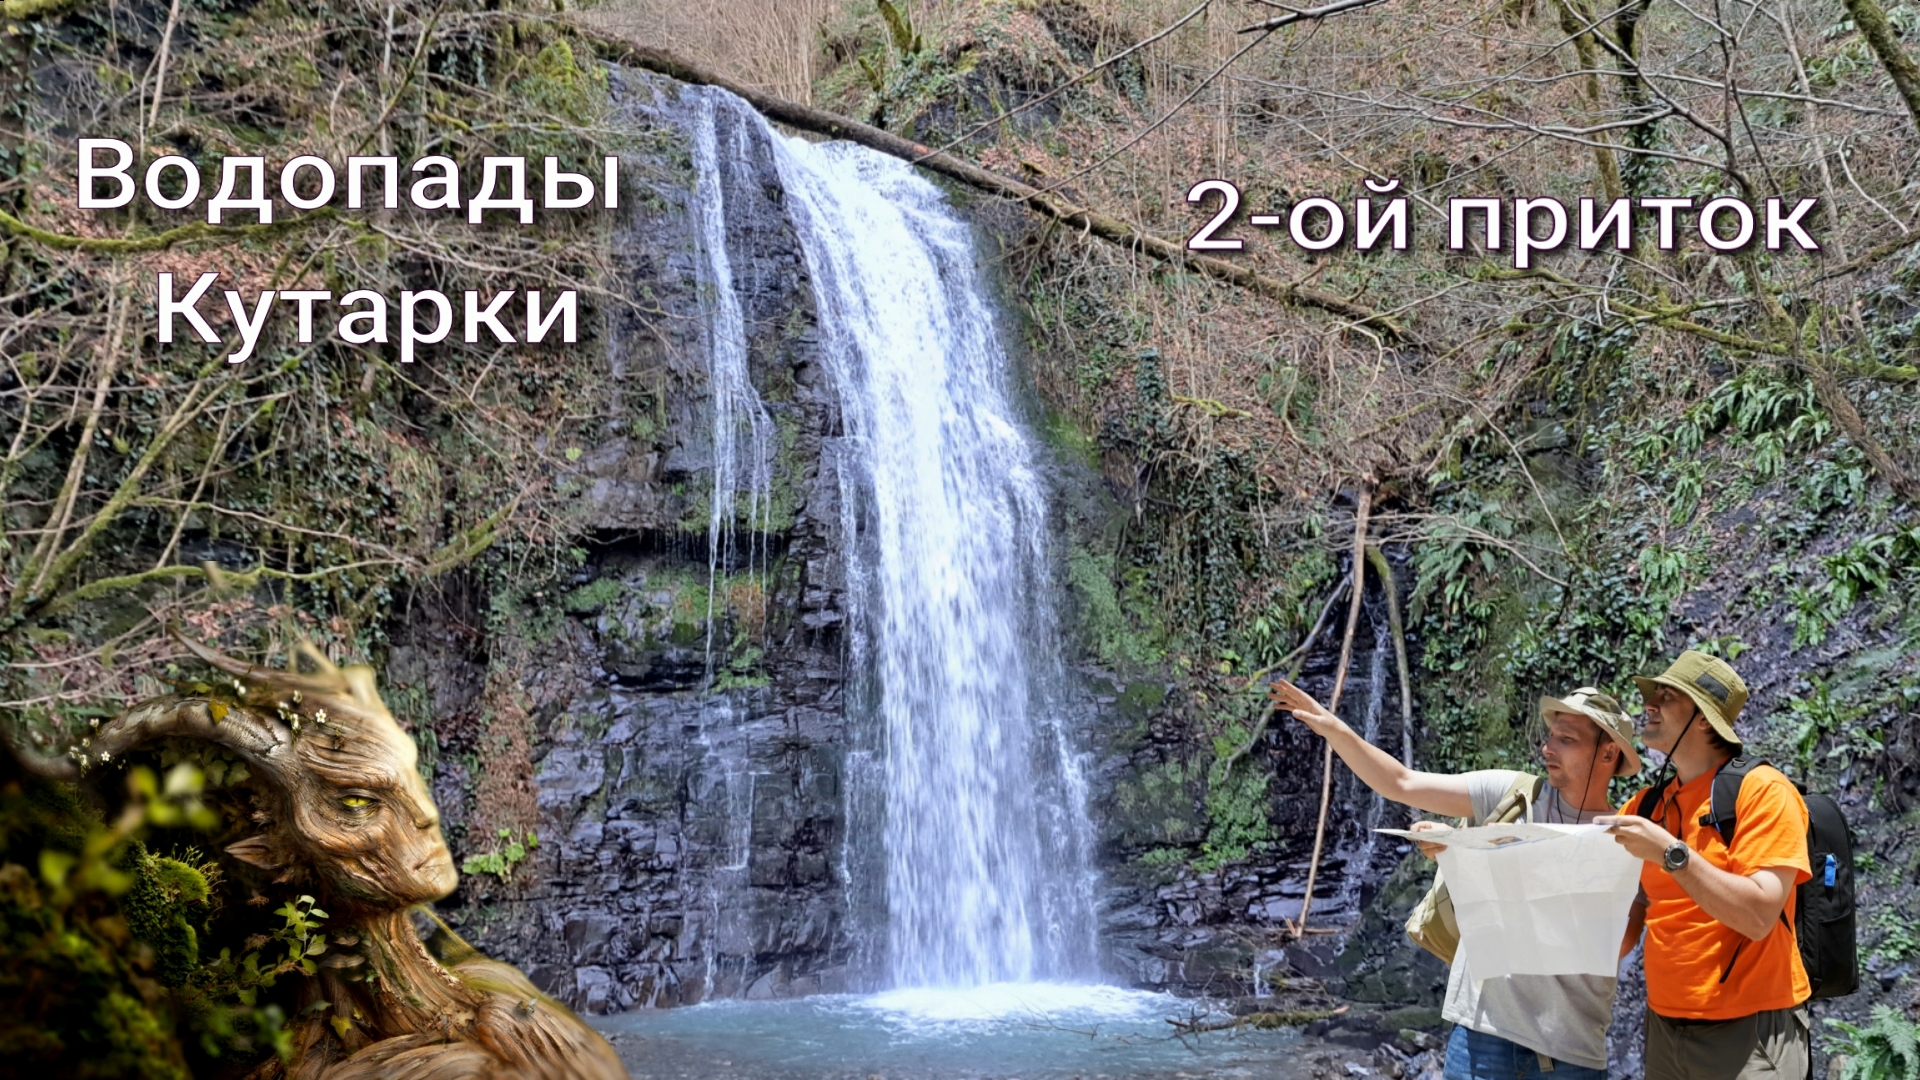 #35 Сочи. Водопады Кутарки на 2-ом притоке (Архив: Январь 2024 г)